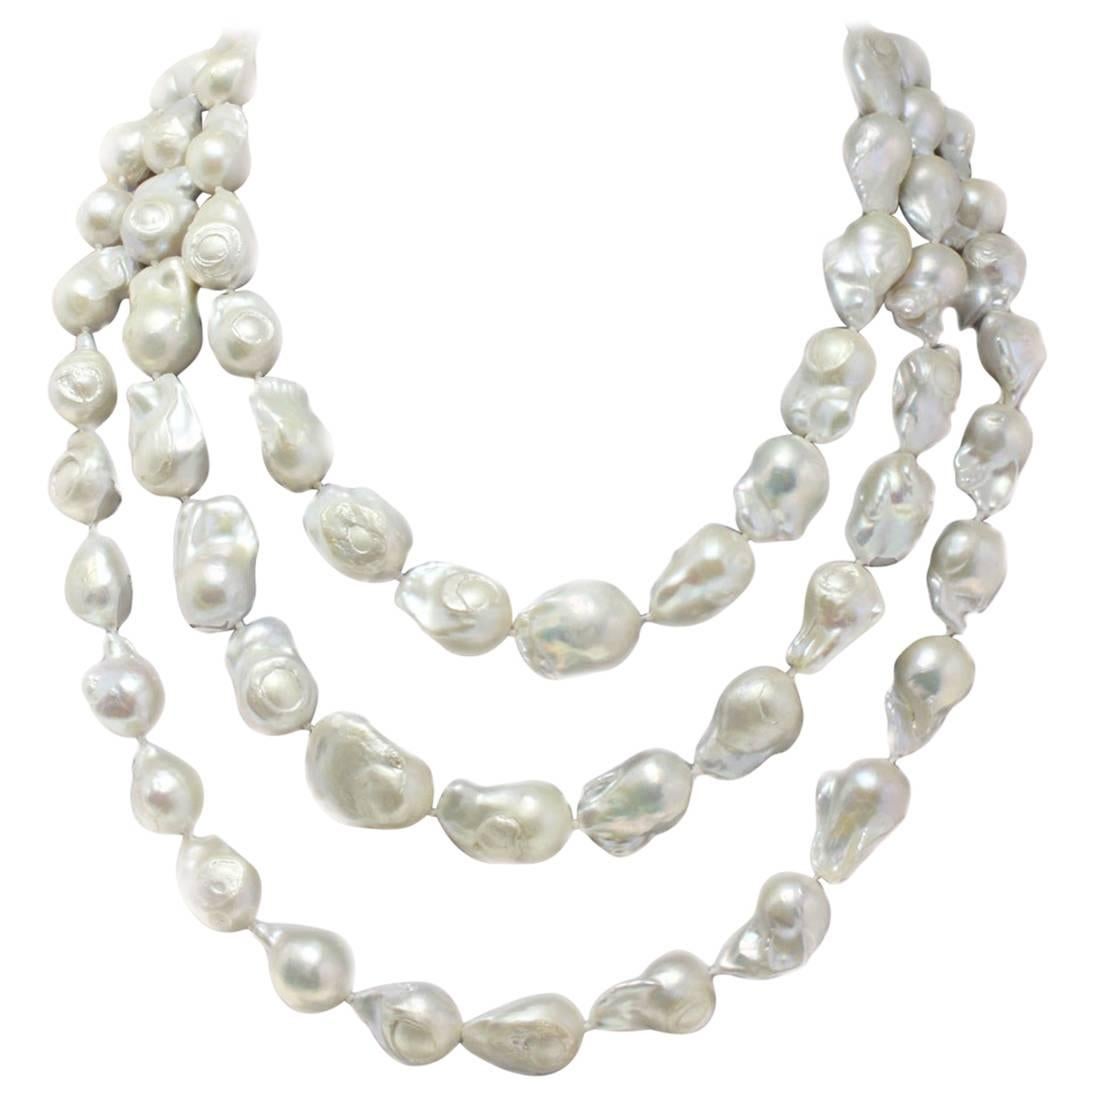  Baroque Pearls Long Necklace